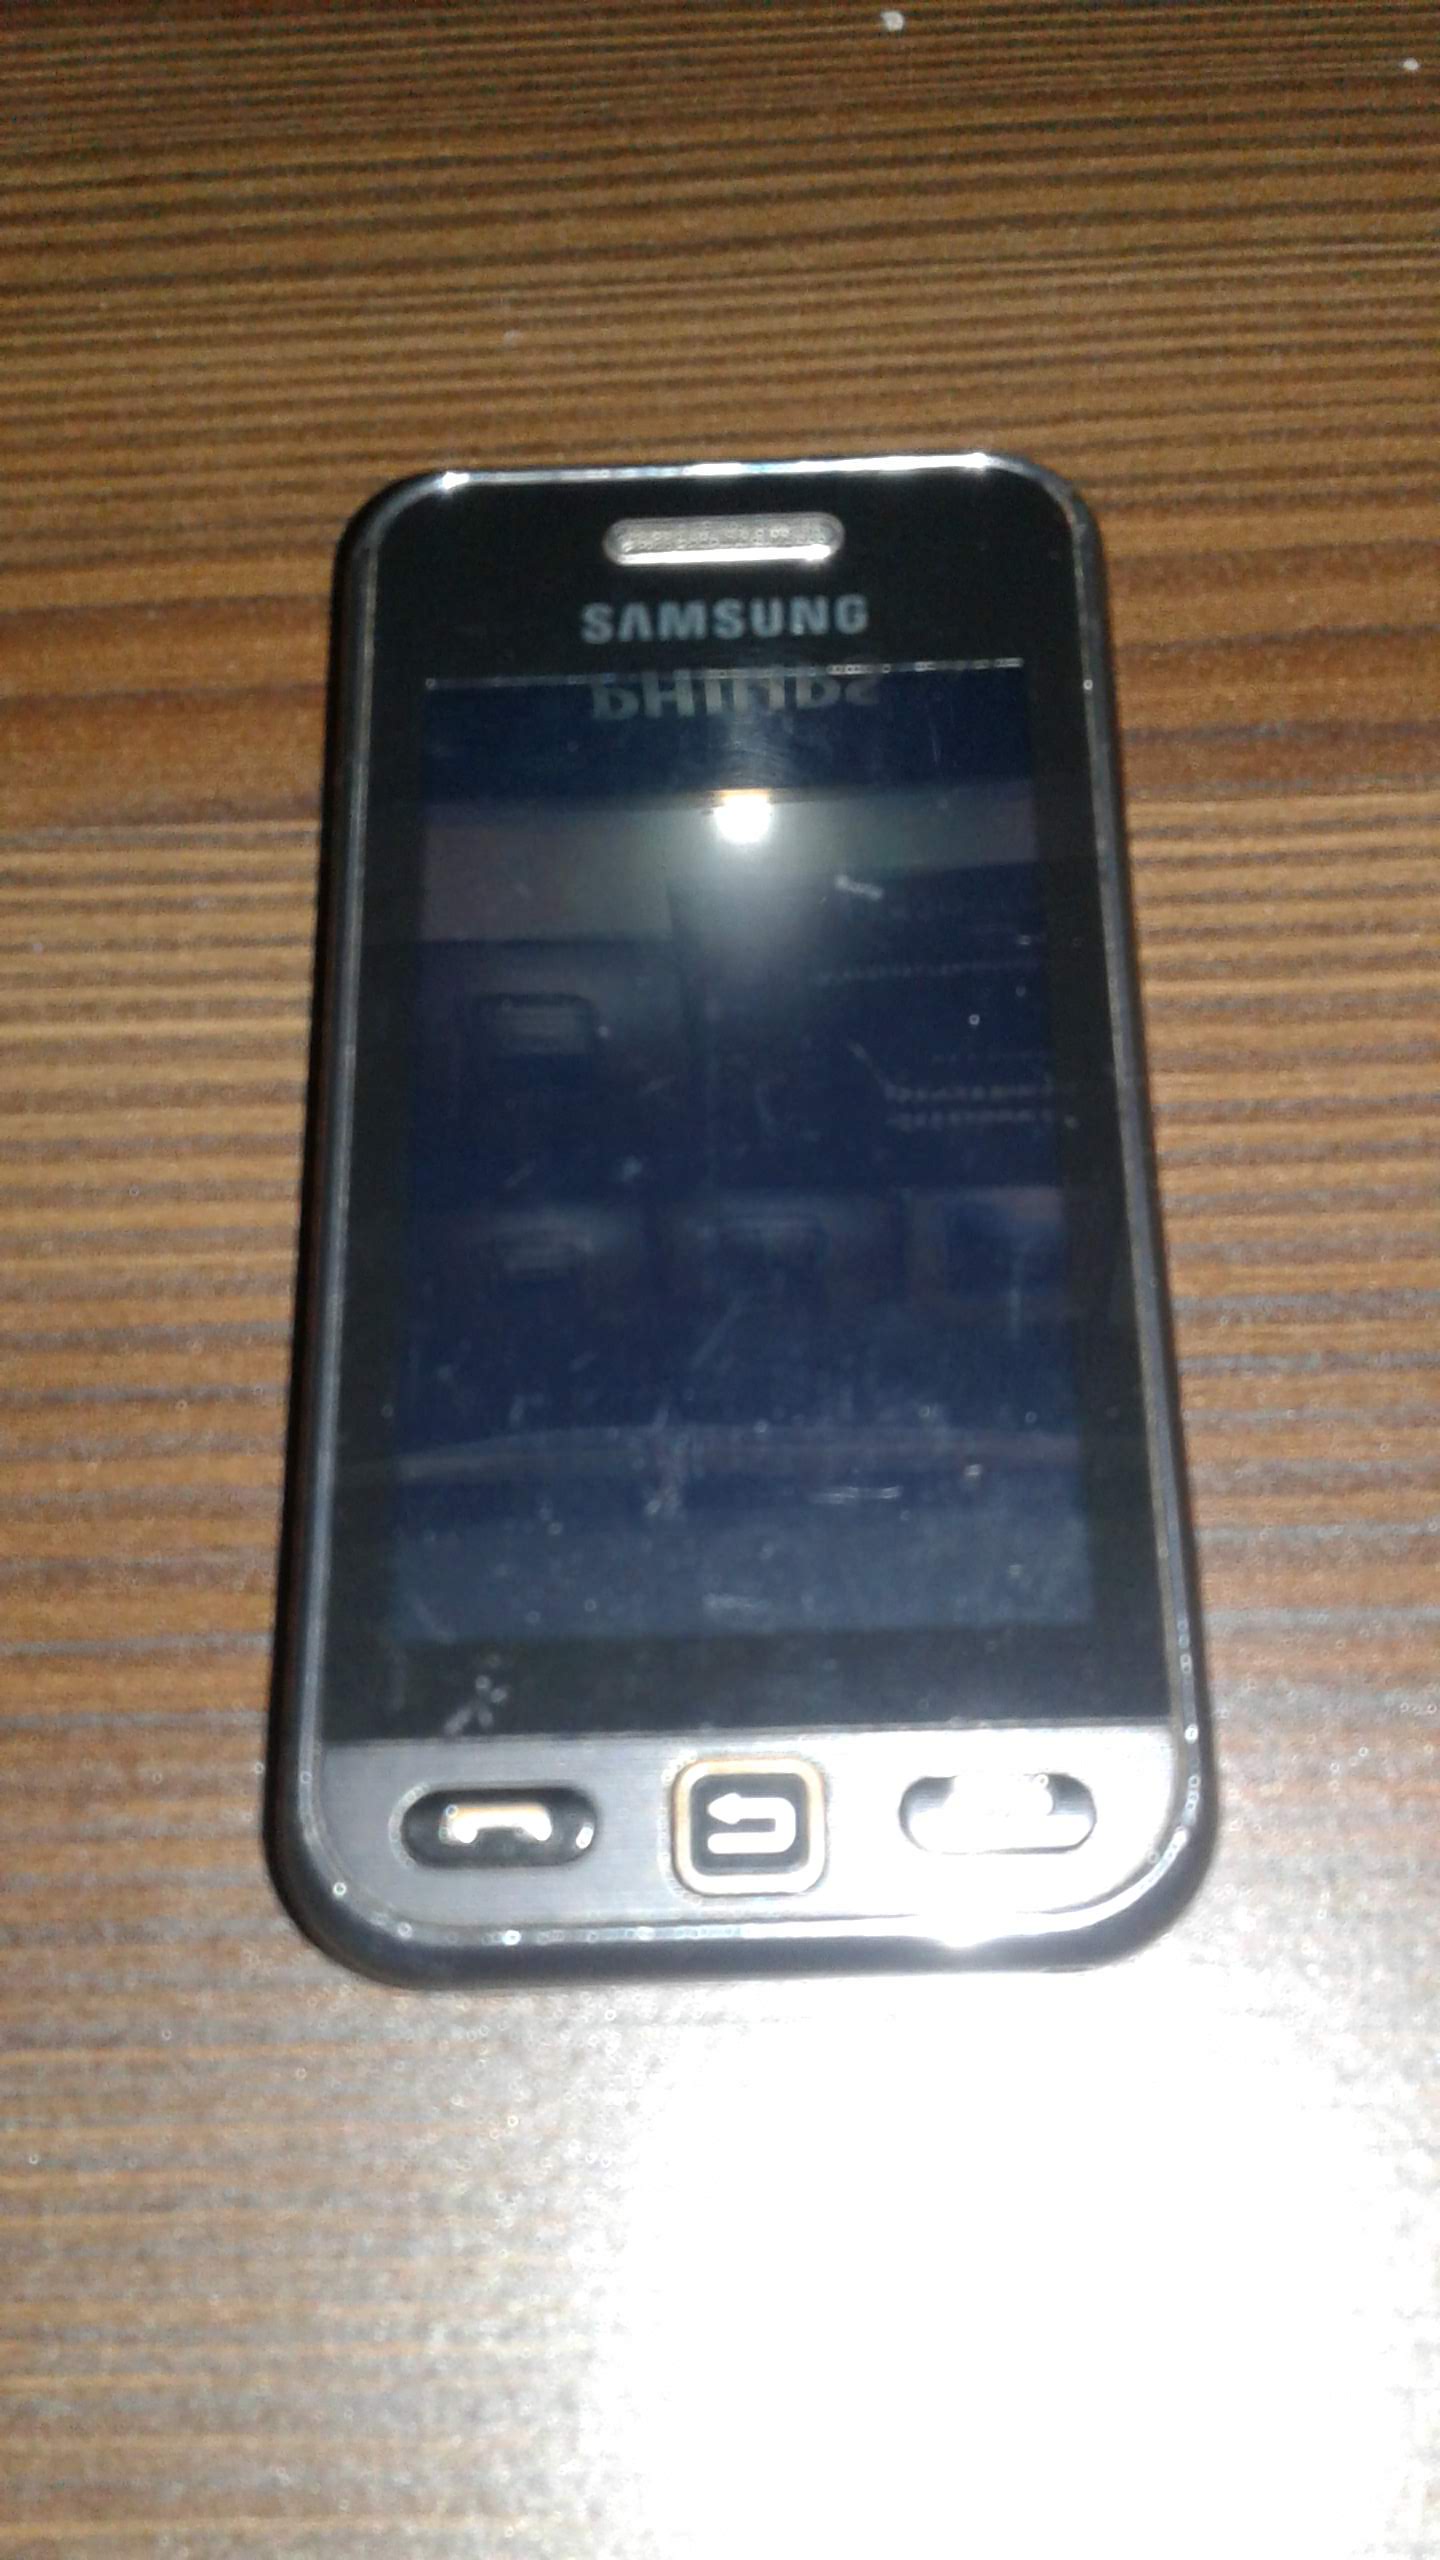 Samsung S-5230 fan club